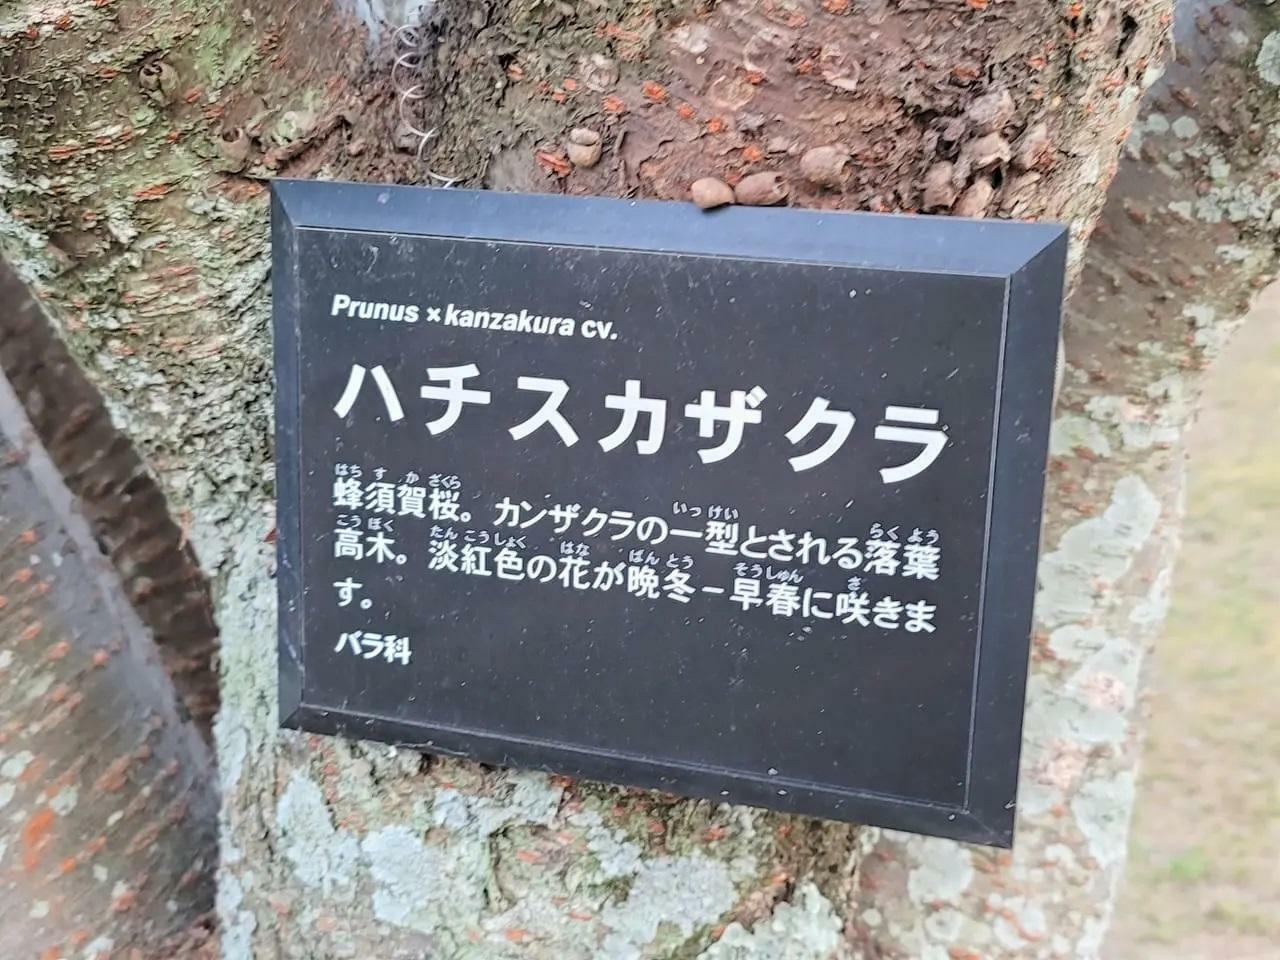 過去に徳島中央公園助任川沿いにて撮影した「蜂須賀桜」に関する説明。